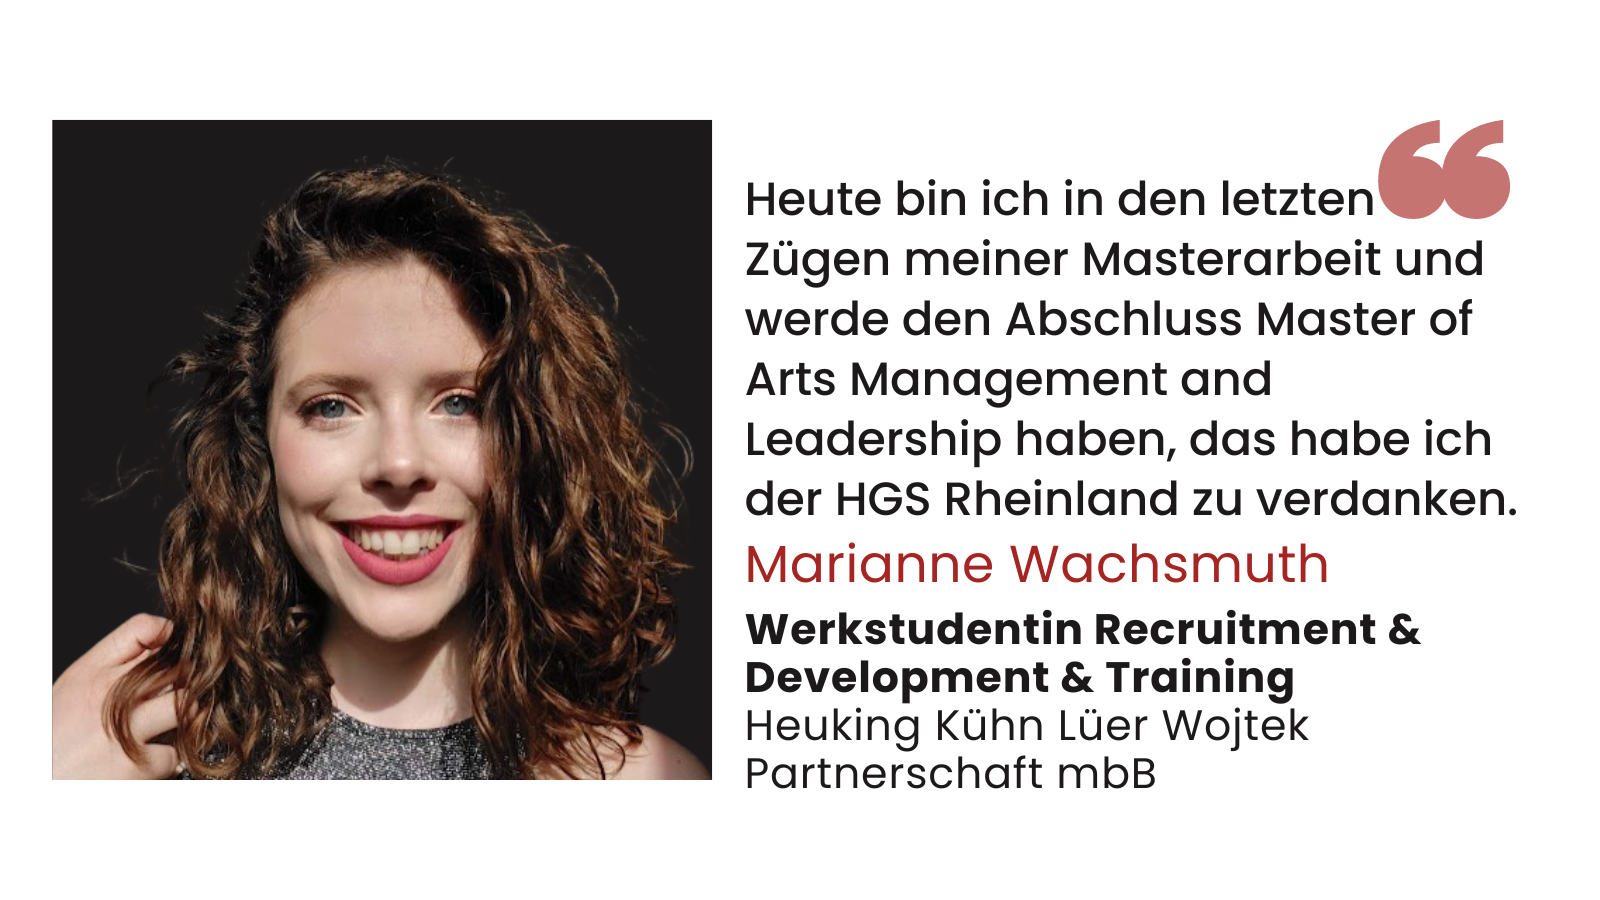 Marianne Wachsmuth